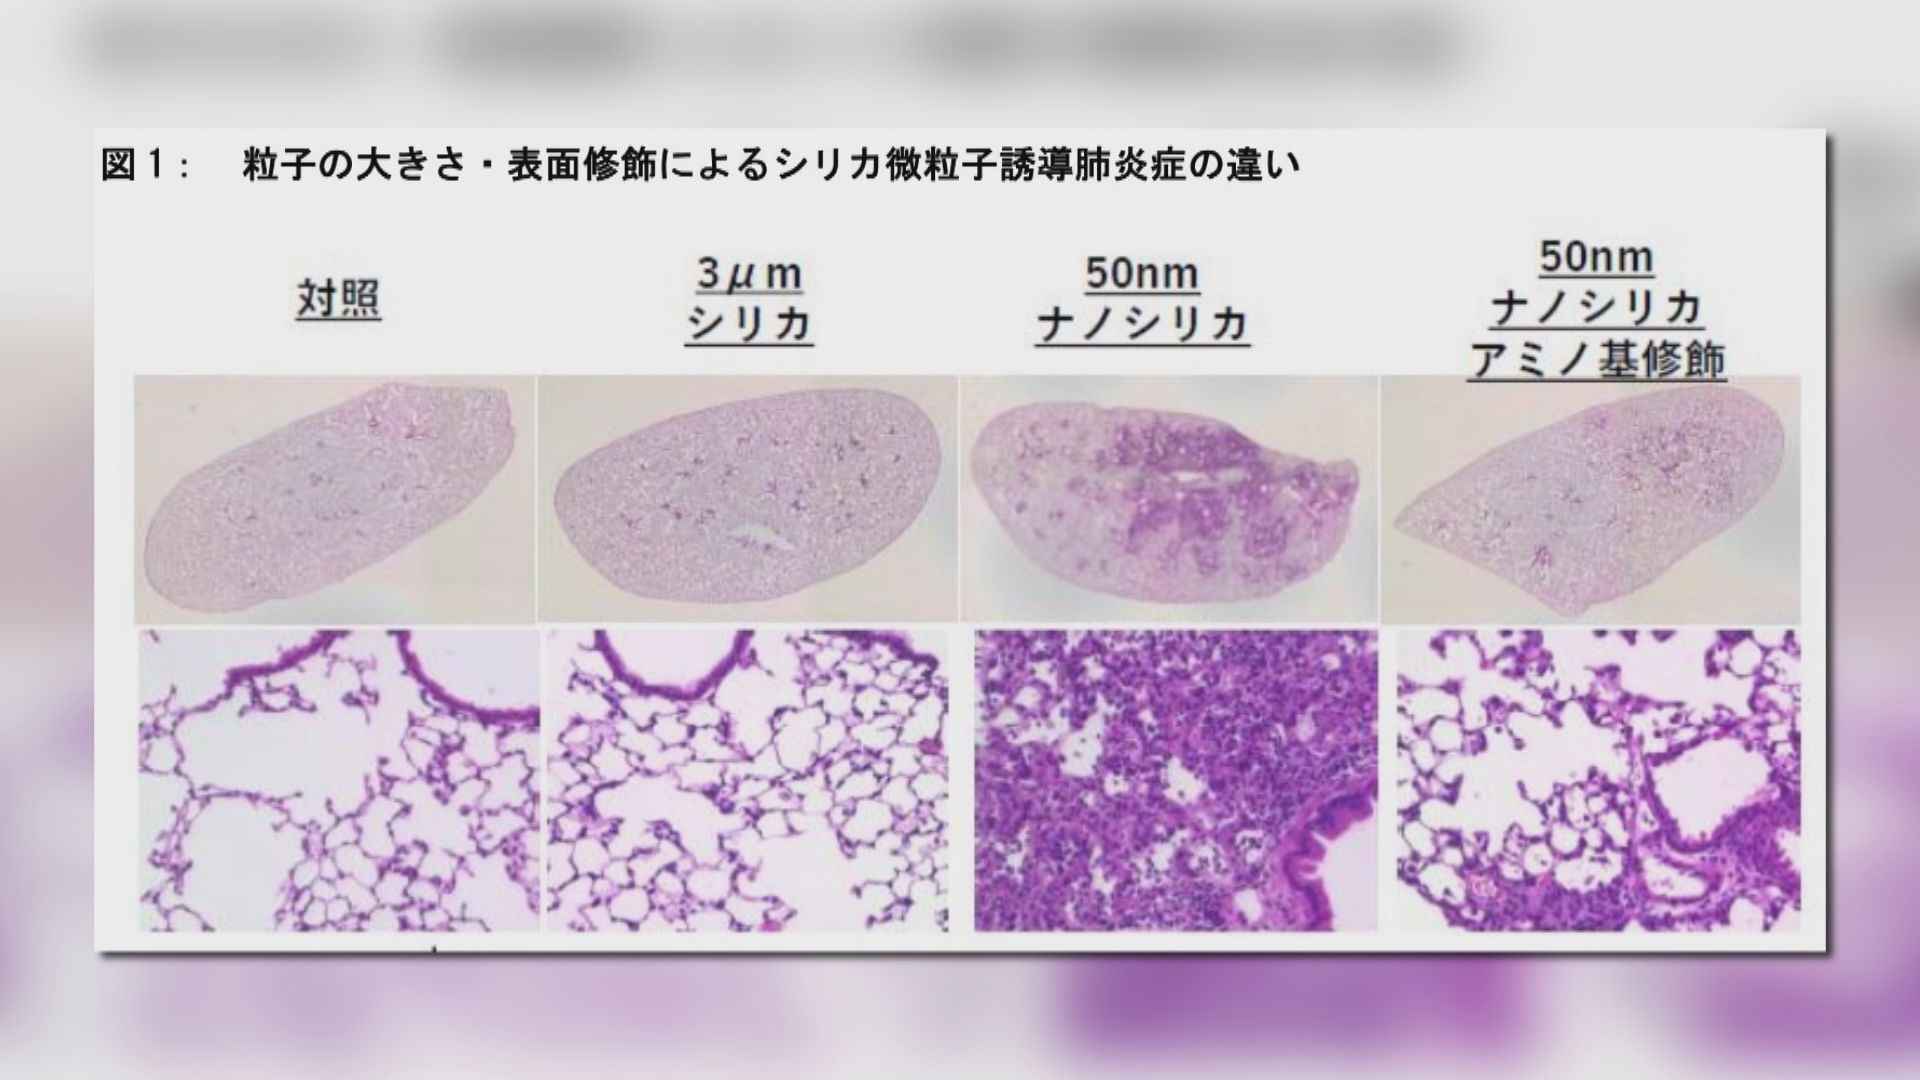 日本研究發現吸入人造微粒引致肺部發炎機制